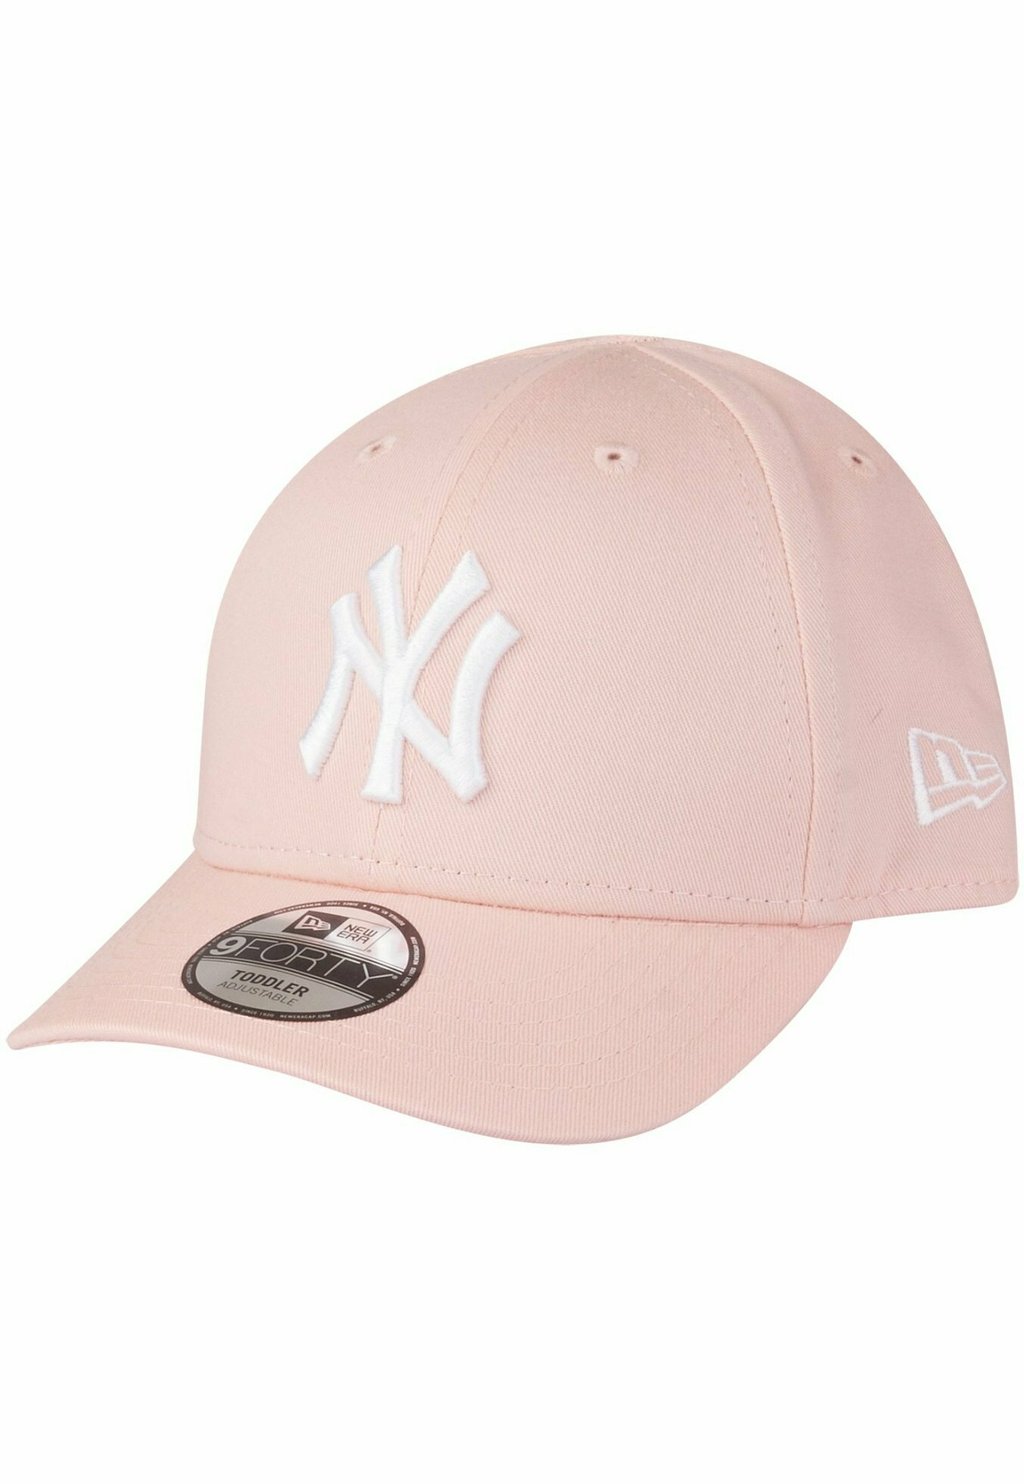 Бейсболка 9FORTY STRETCHED NY YANKEES New Era, цвет rosa